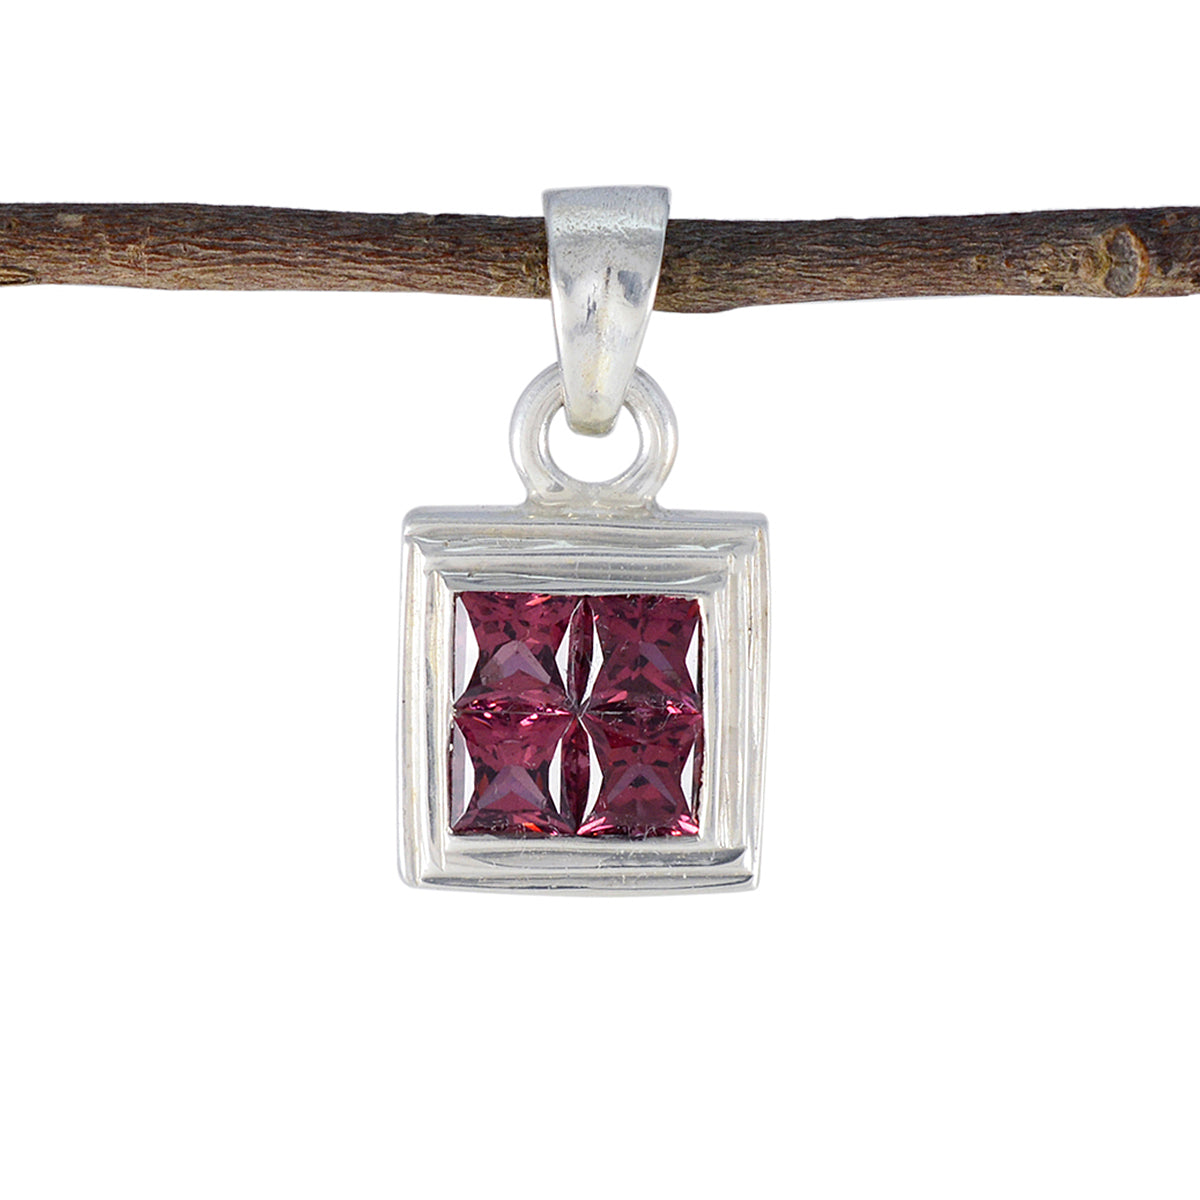 riyo splendide gemme quadrate sfaccettate con granato rosso, ciondolo in argento massiccio, regalo per il matrimonio